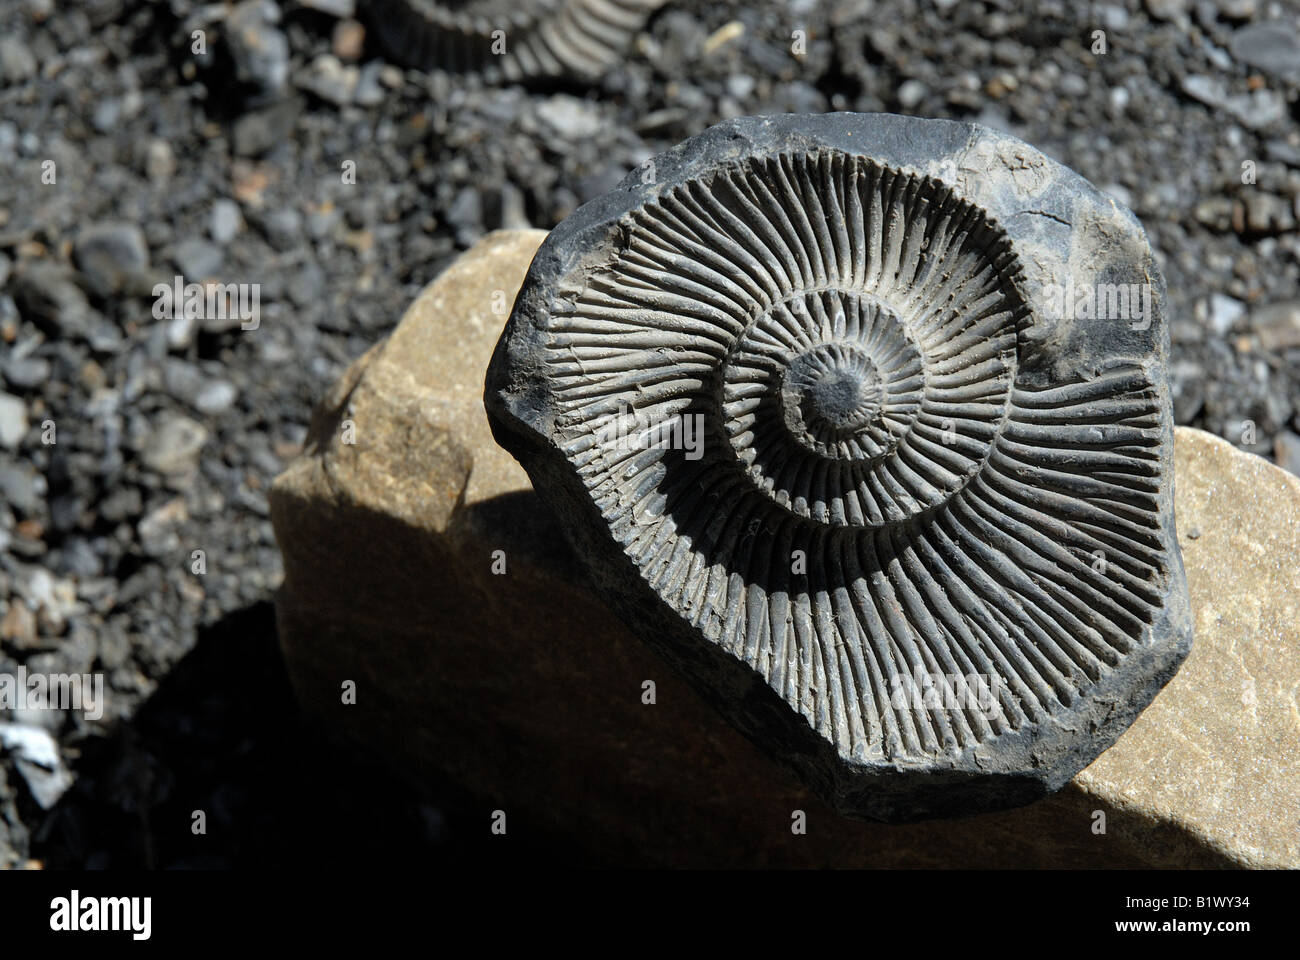 Des fossiles d'ammonites primordiale de la vie aquatique dans la vallée de Spiti Langza, preuve d'être submergée par la mer Téthys Banque D'Images